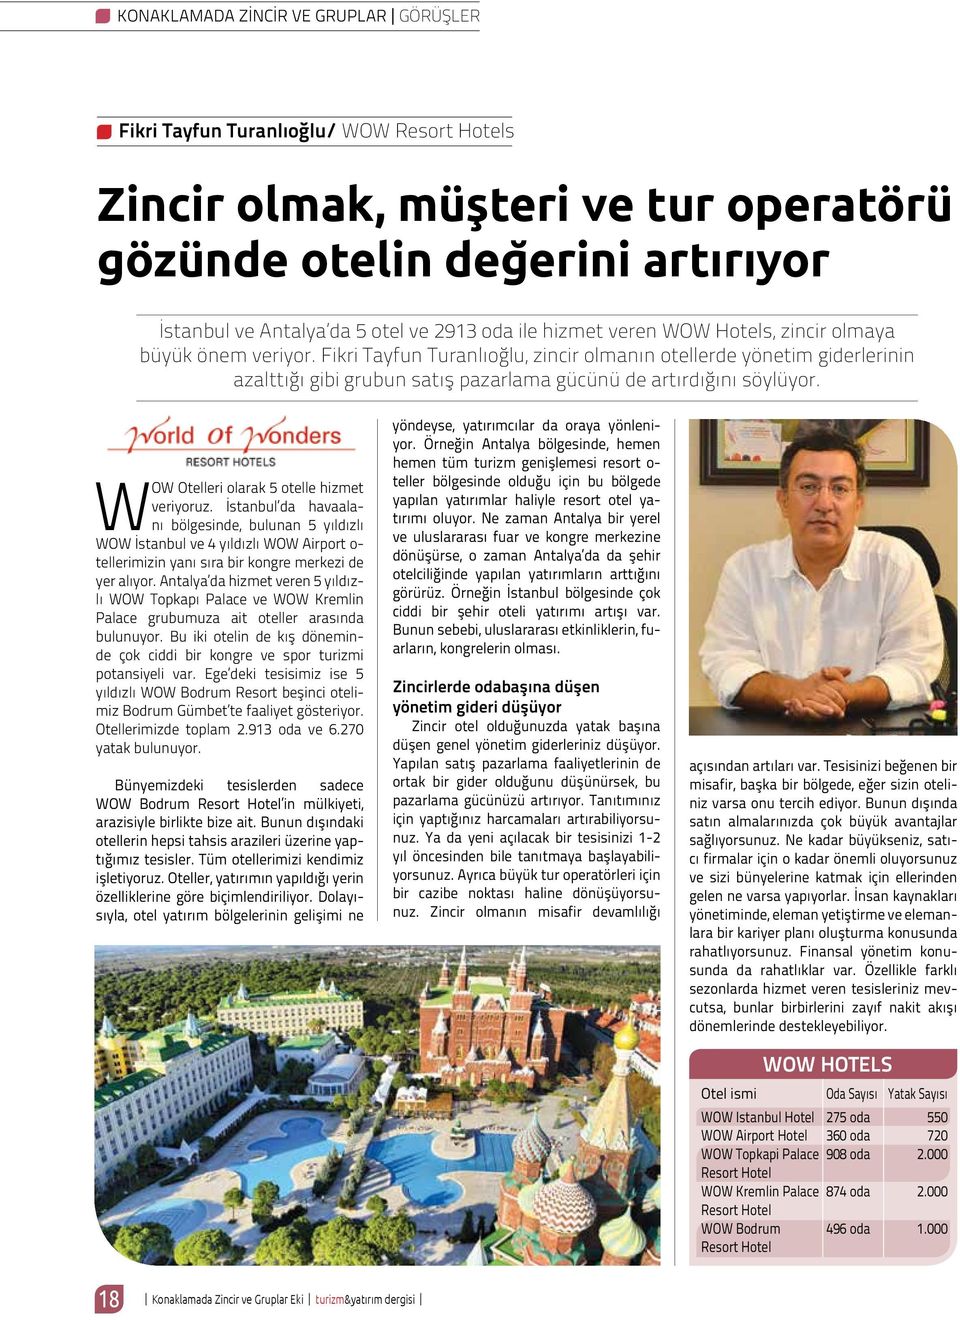 Fikri Tayfun Turanlıoğlu, zincir olmanın otellerde yönetim giderlerinin azalttığı gibi grubun satış pazarlama gücünü de artırdığını söylüyor. WOW Otelleri olarak 5 otelle hizmet veriyoruz.